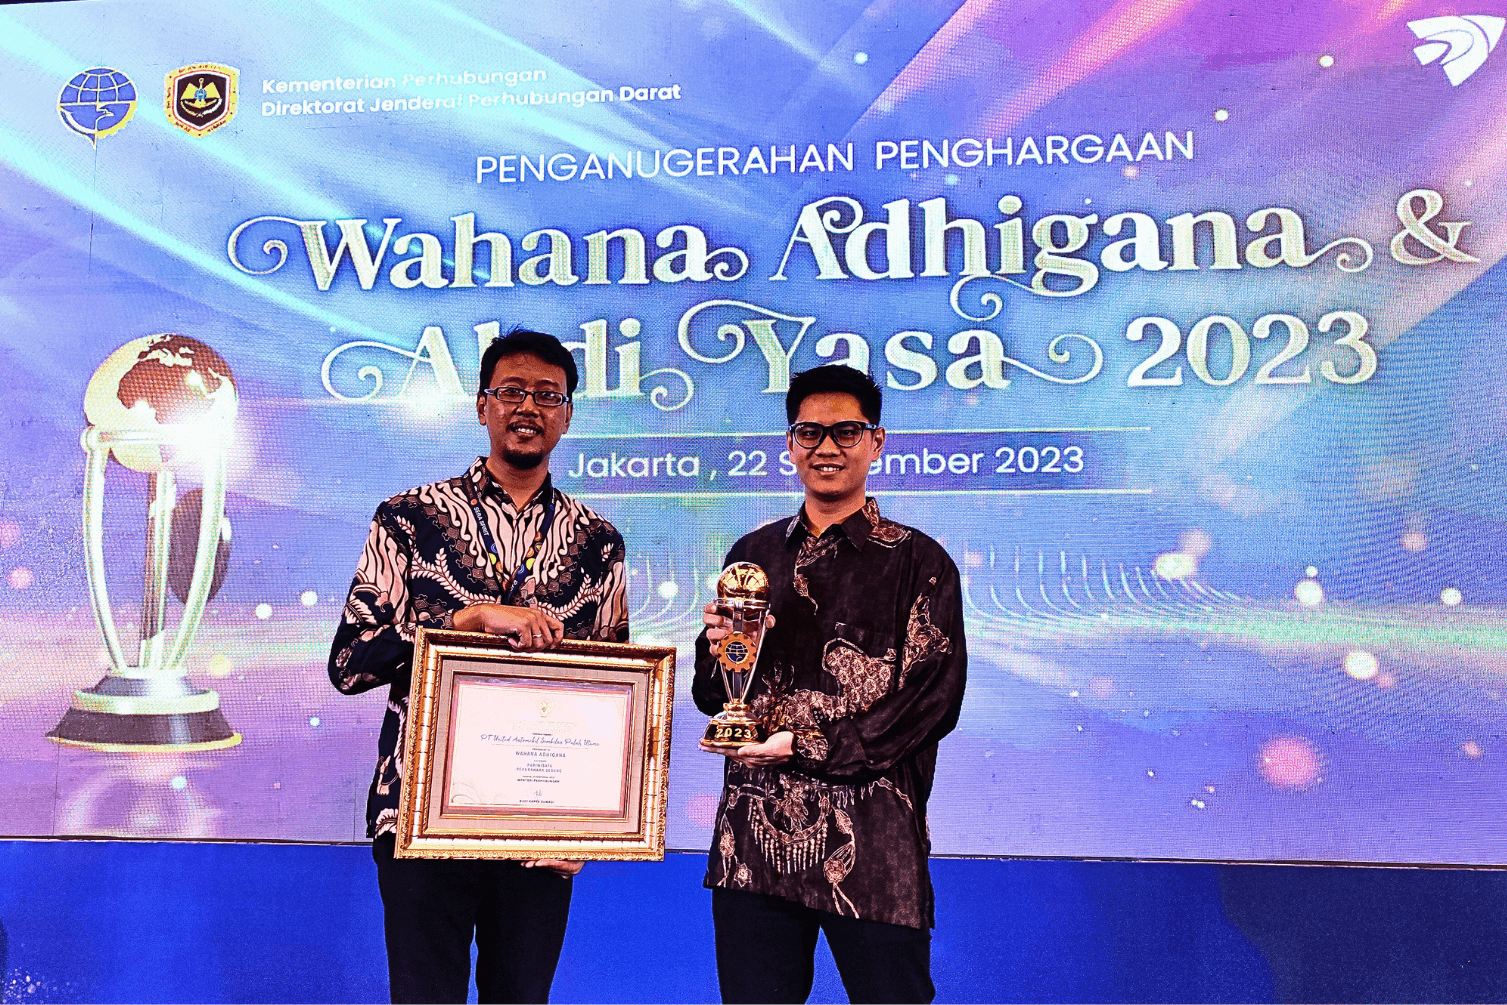 TRAC Bus Raih Penghargaan Wahana Adhigana dari Ditjen Perhubungan Darat.png